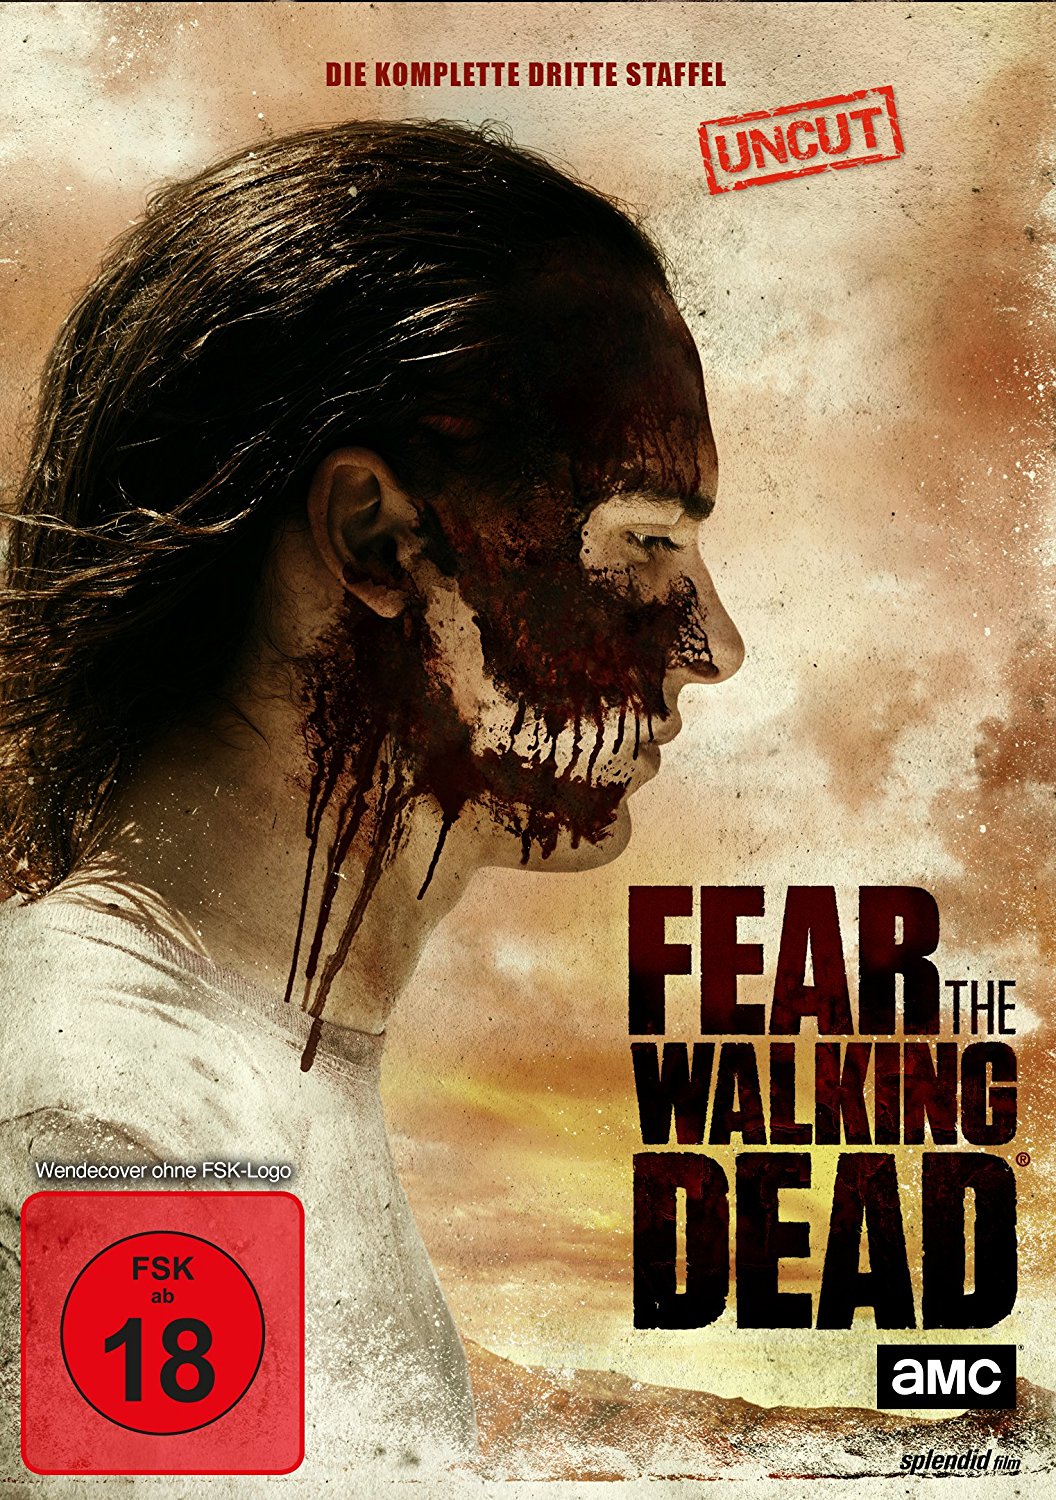 Fear the Walking Dead: Season 3